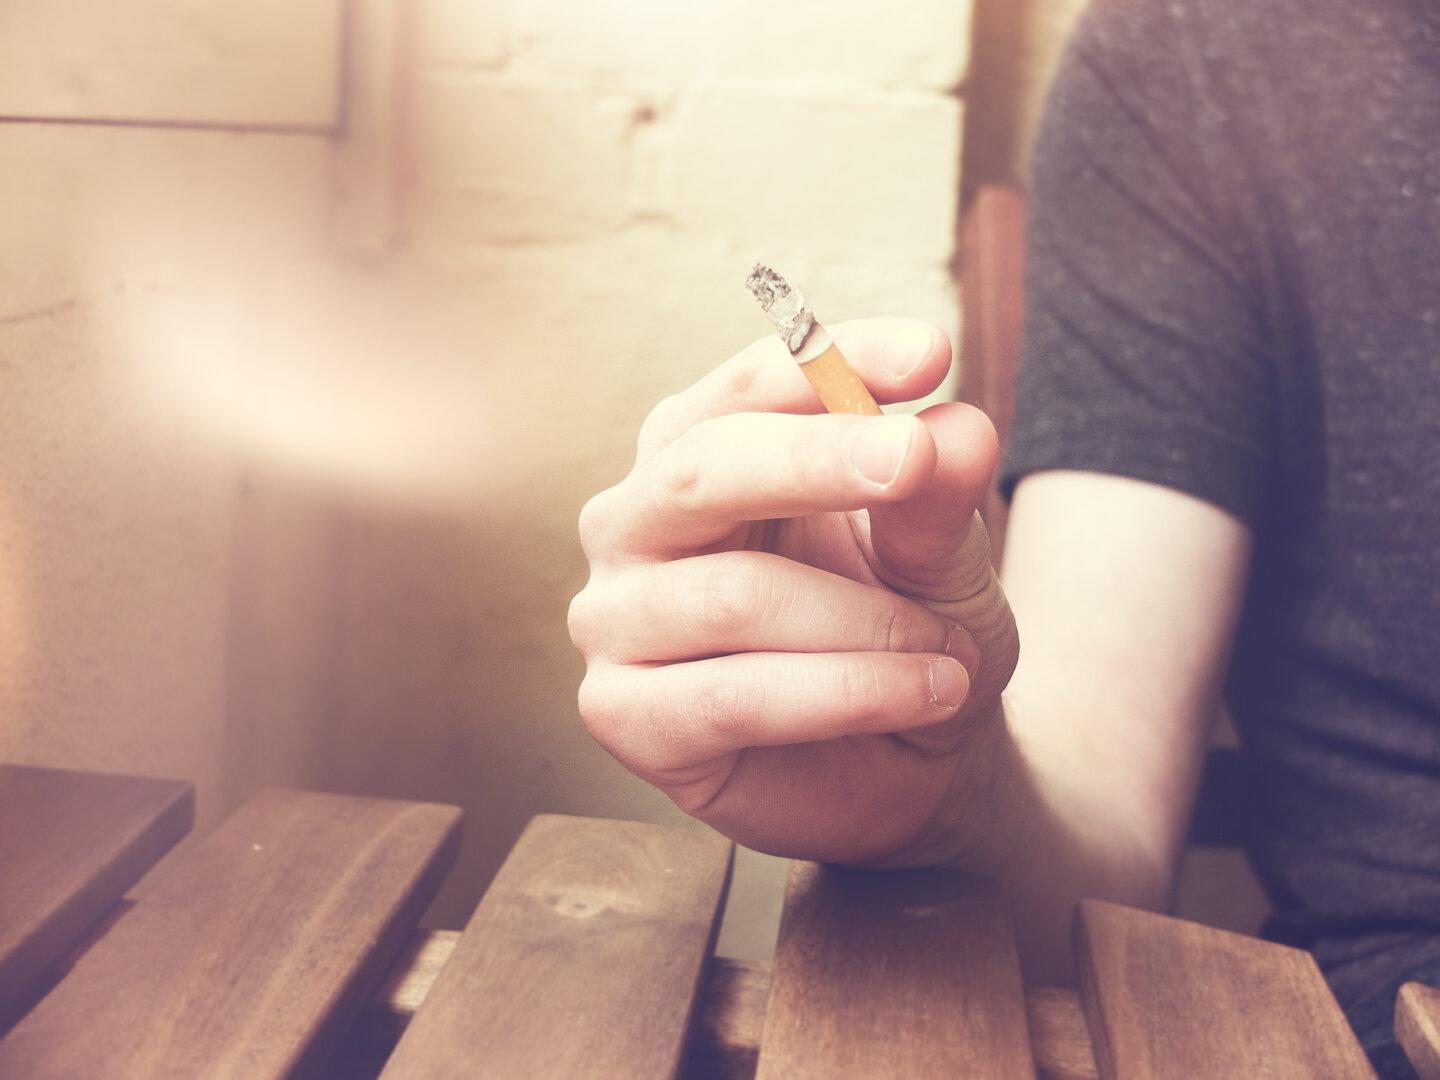 großbritannien will zigaretten verbieten - auch für erwachsene